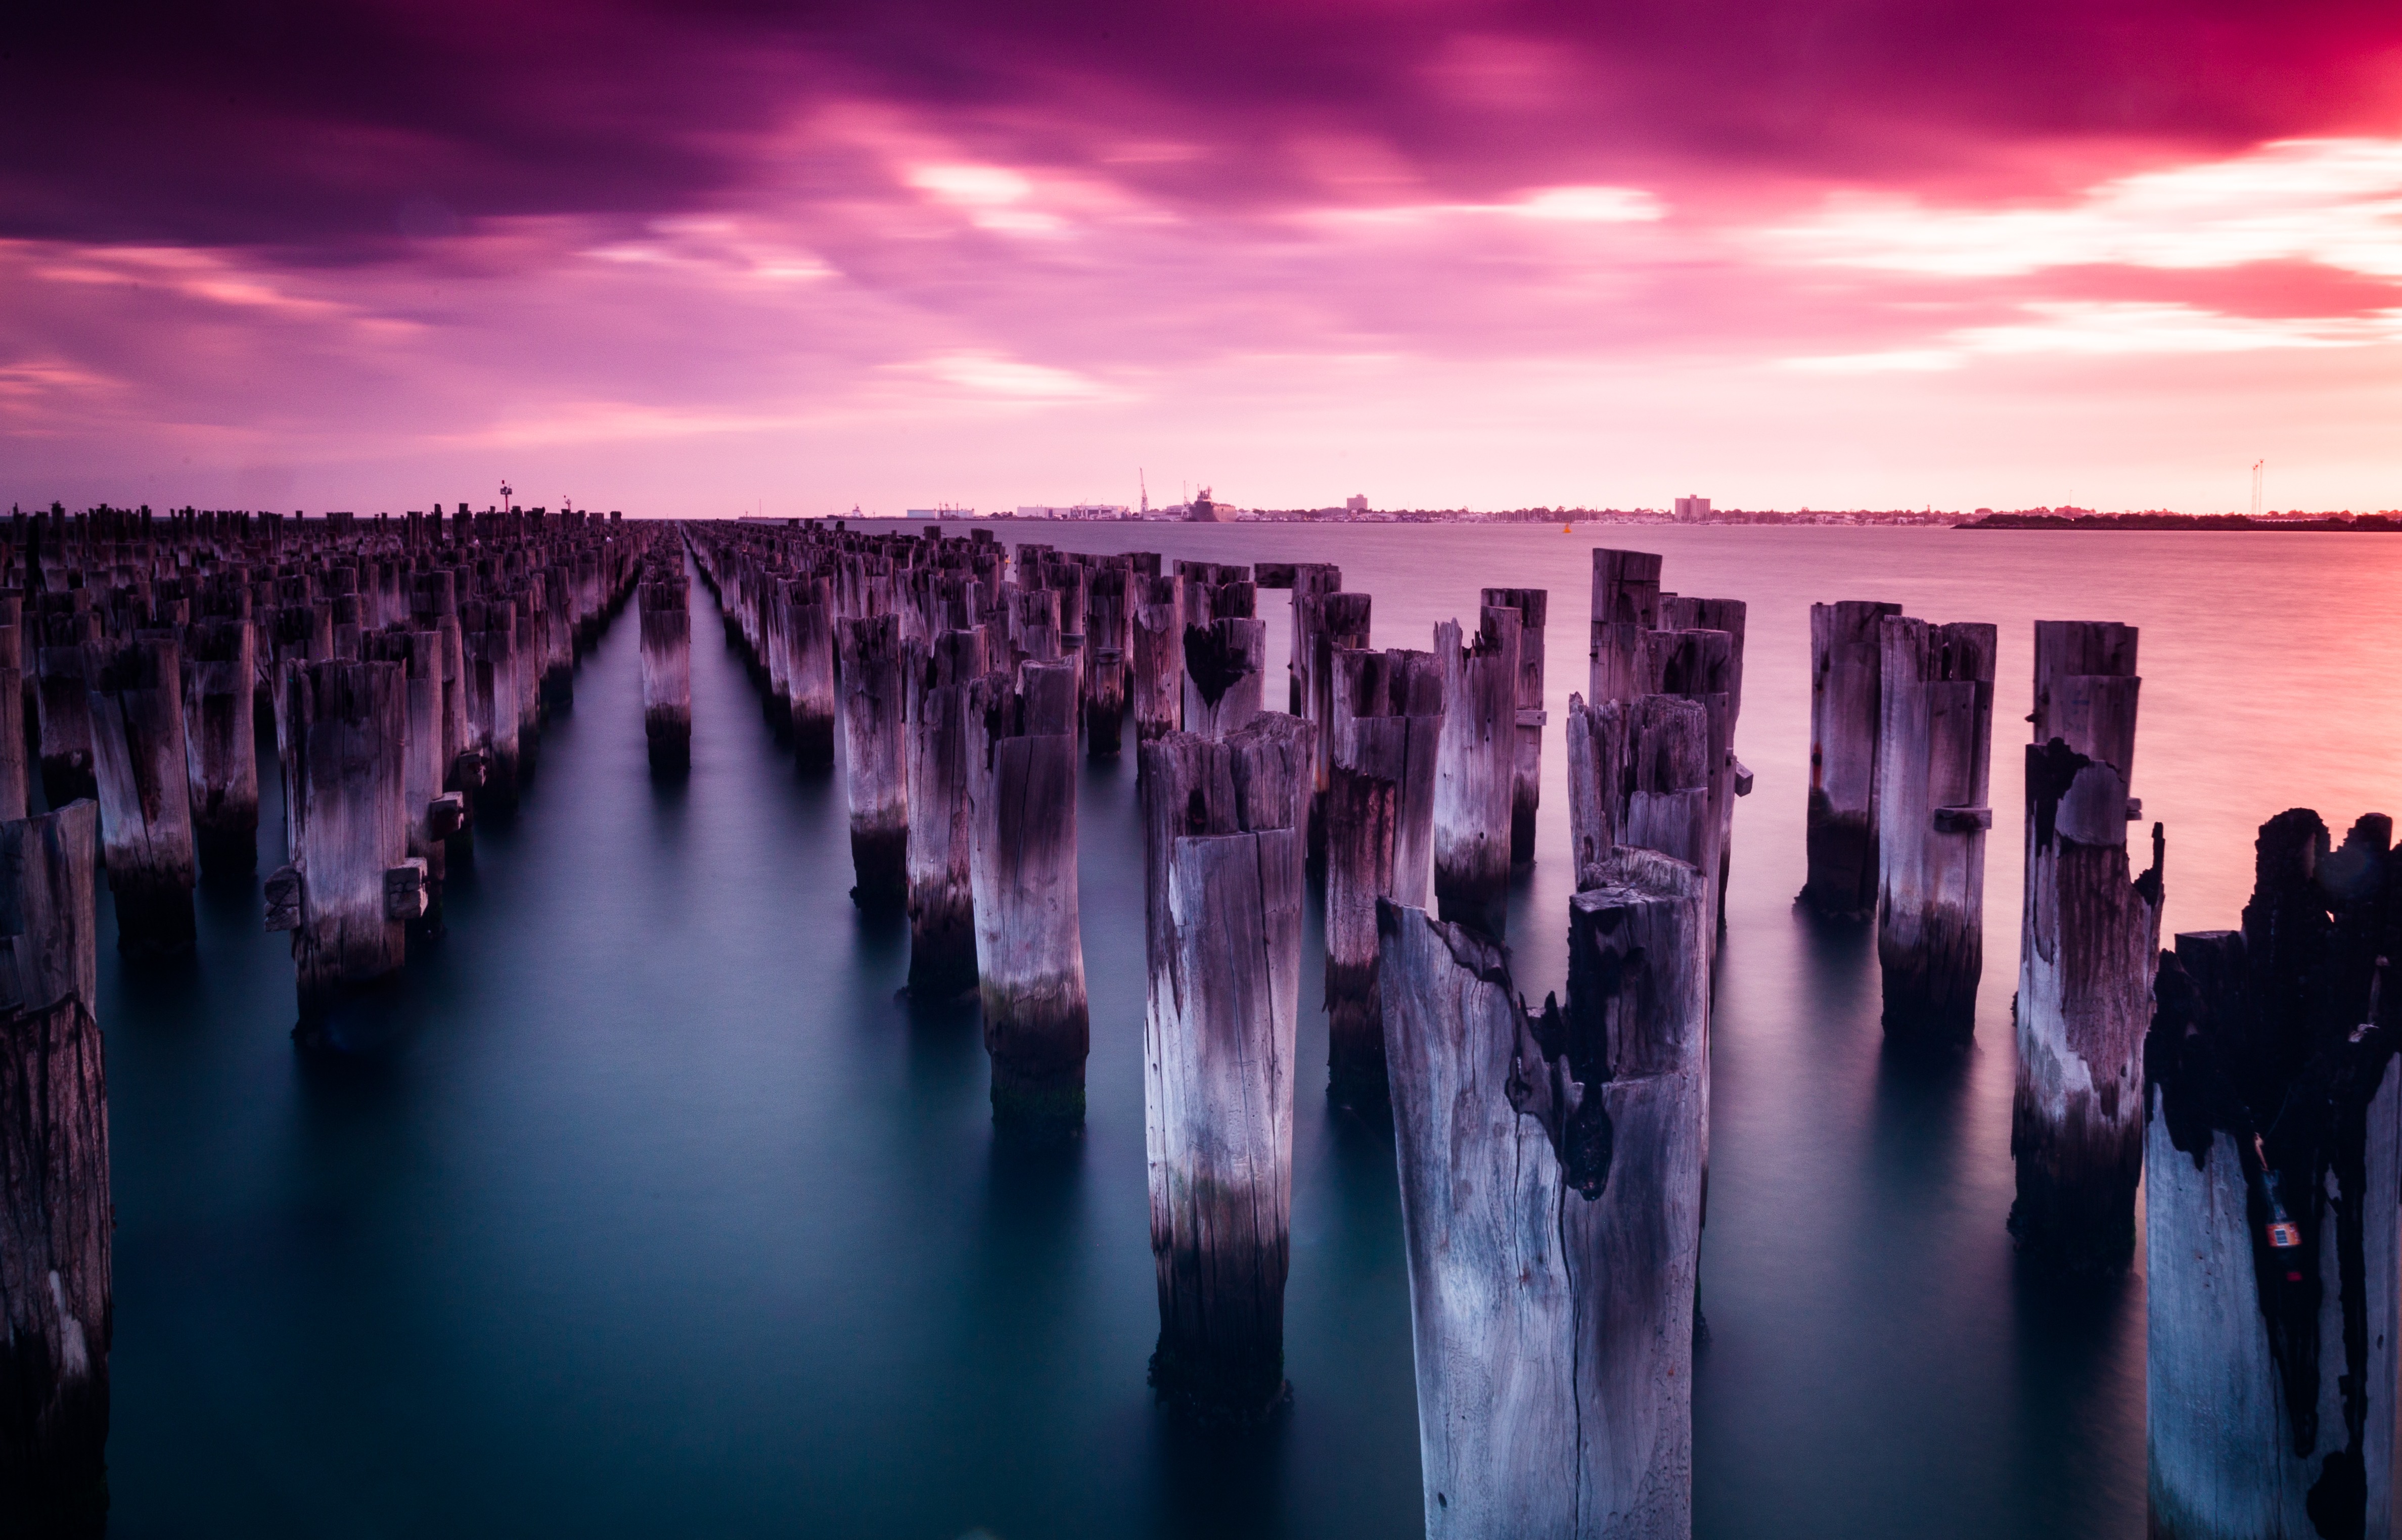 An old pier on the seashore of Australia